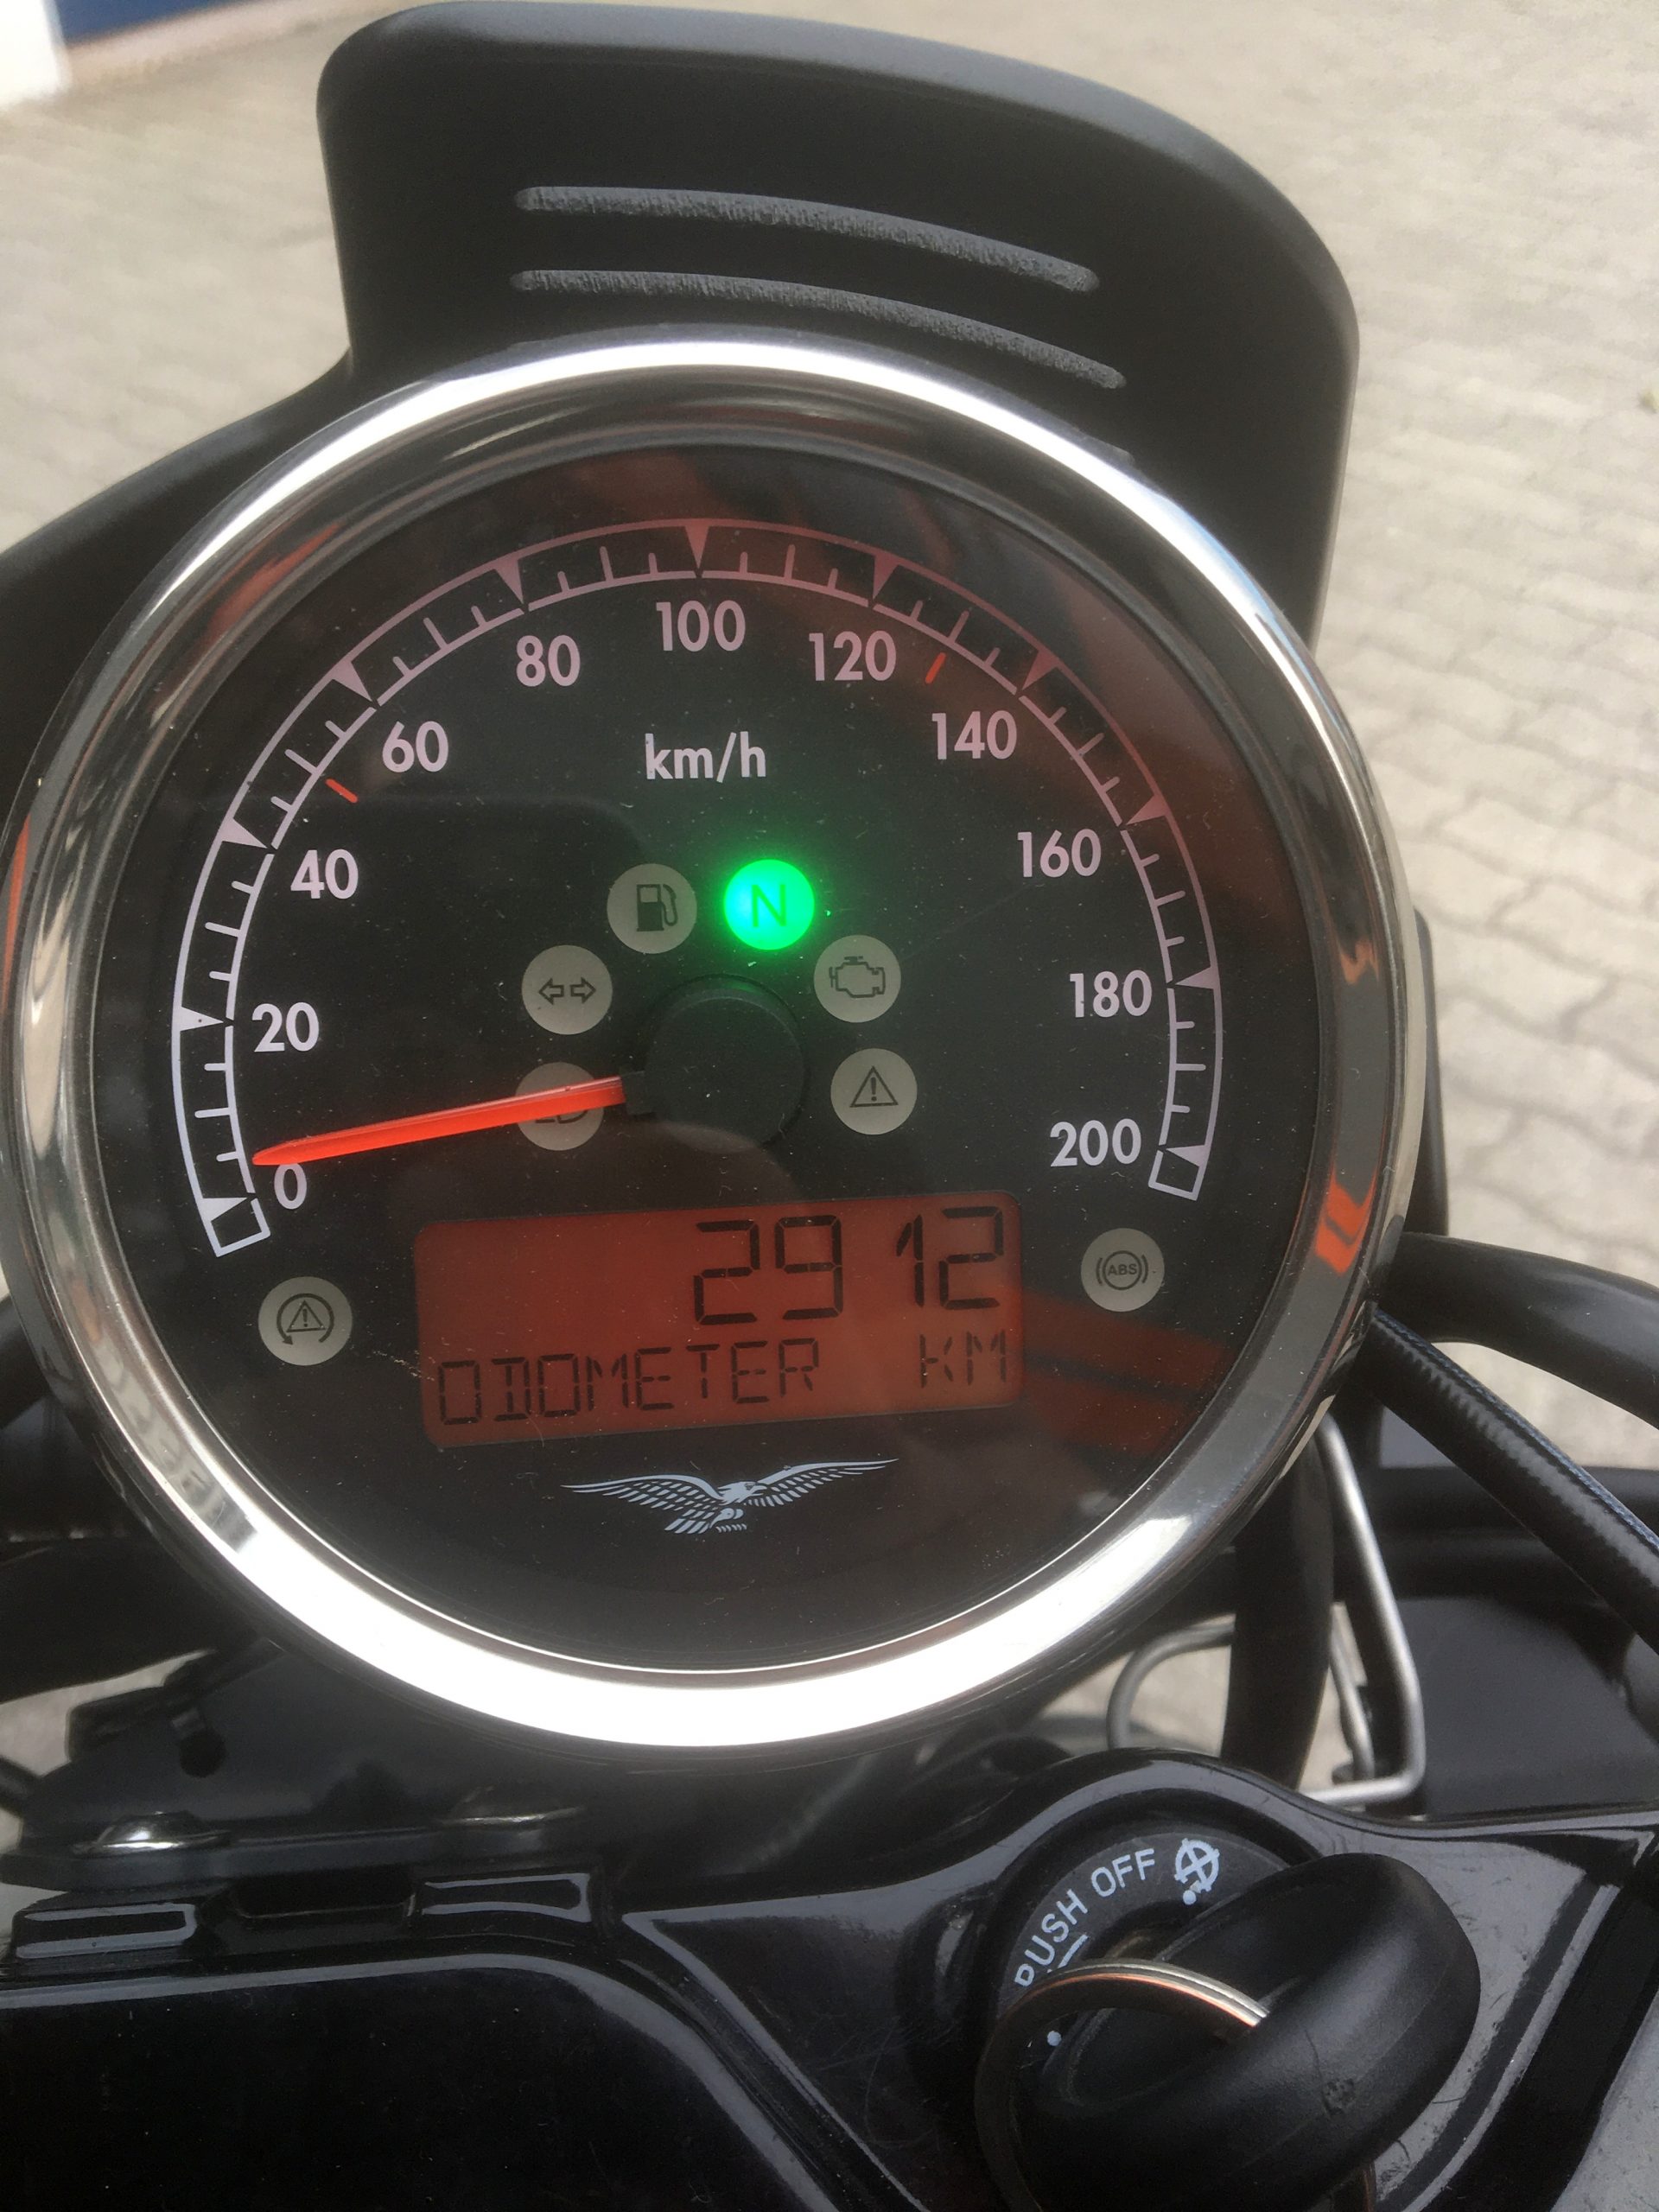 Moto Guzzi V9 Bobber Sport (09/2020) – KM 2912